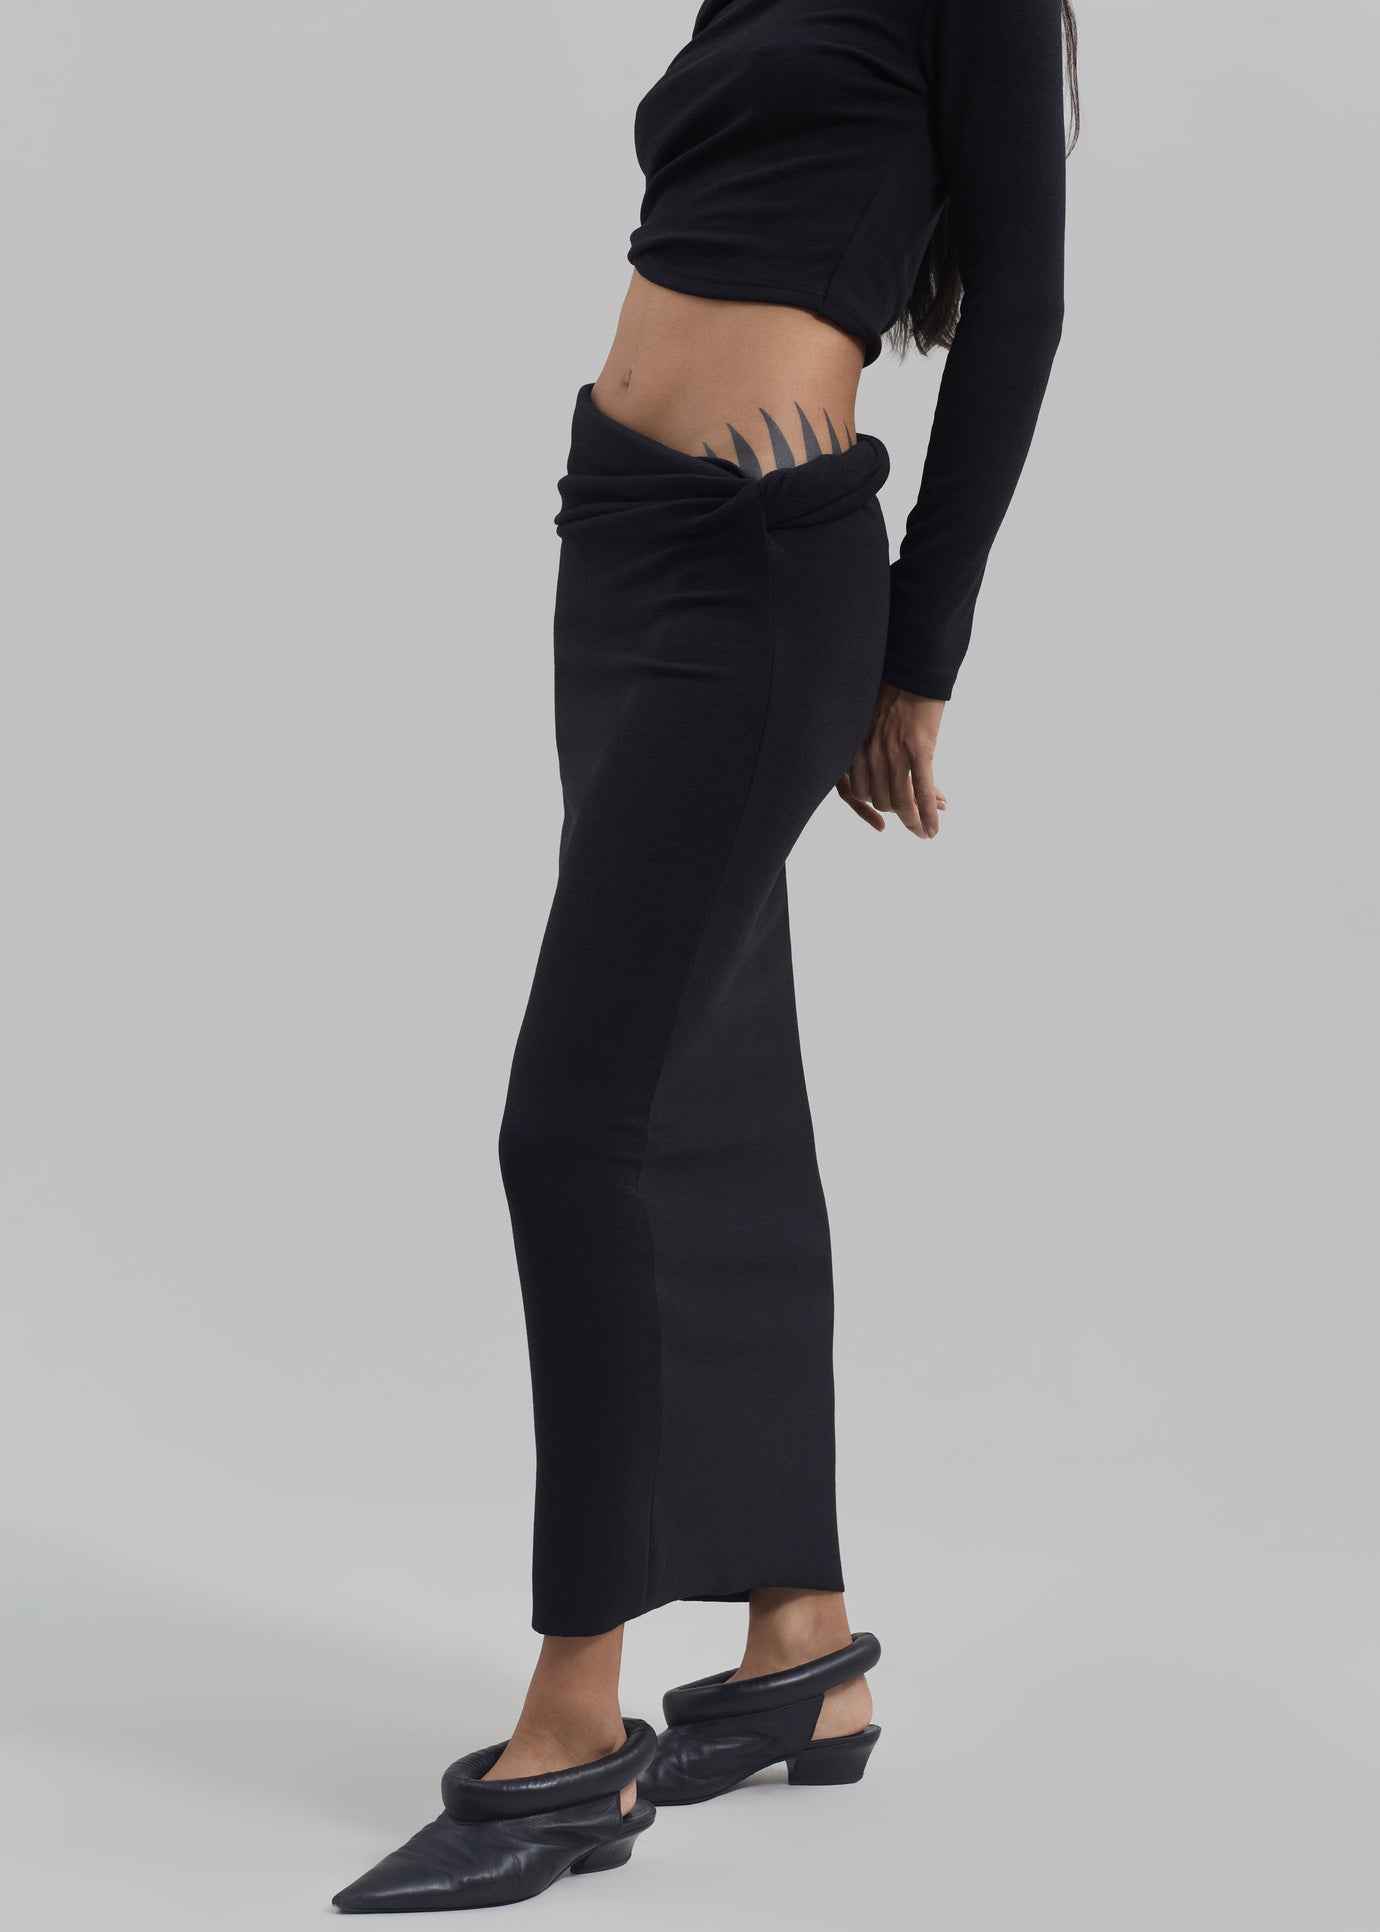 Margot Asymmetric Skirt - Black - 1